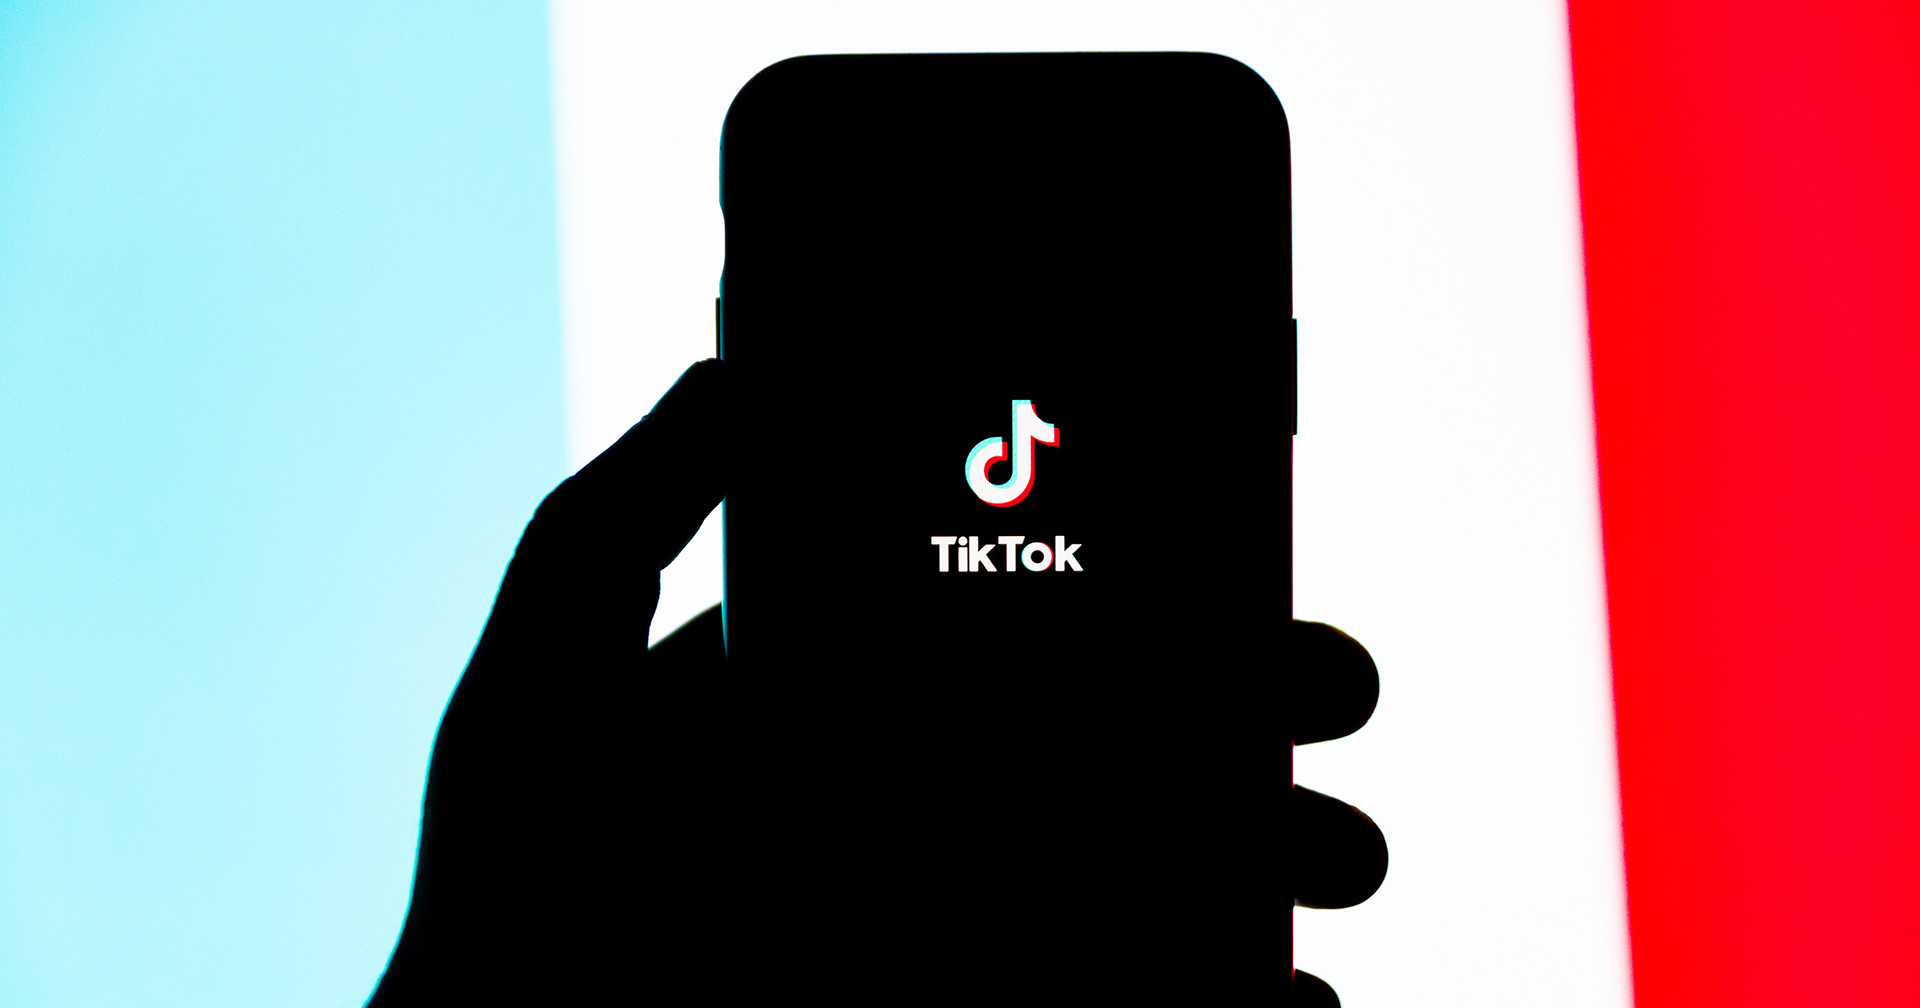 นักวิจัยพบเบราว์เซอร์ใน TikTok มีโค้ดติดตามข้อมูลส่วนตัวของผู้ใช้